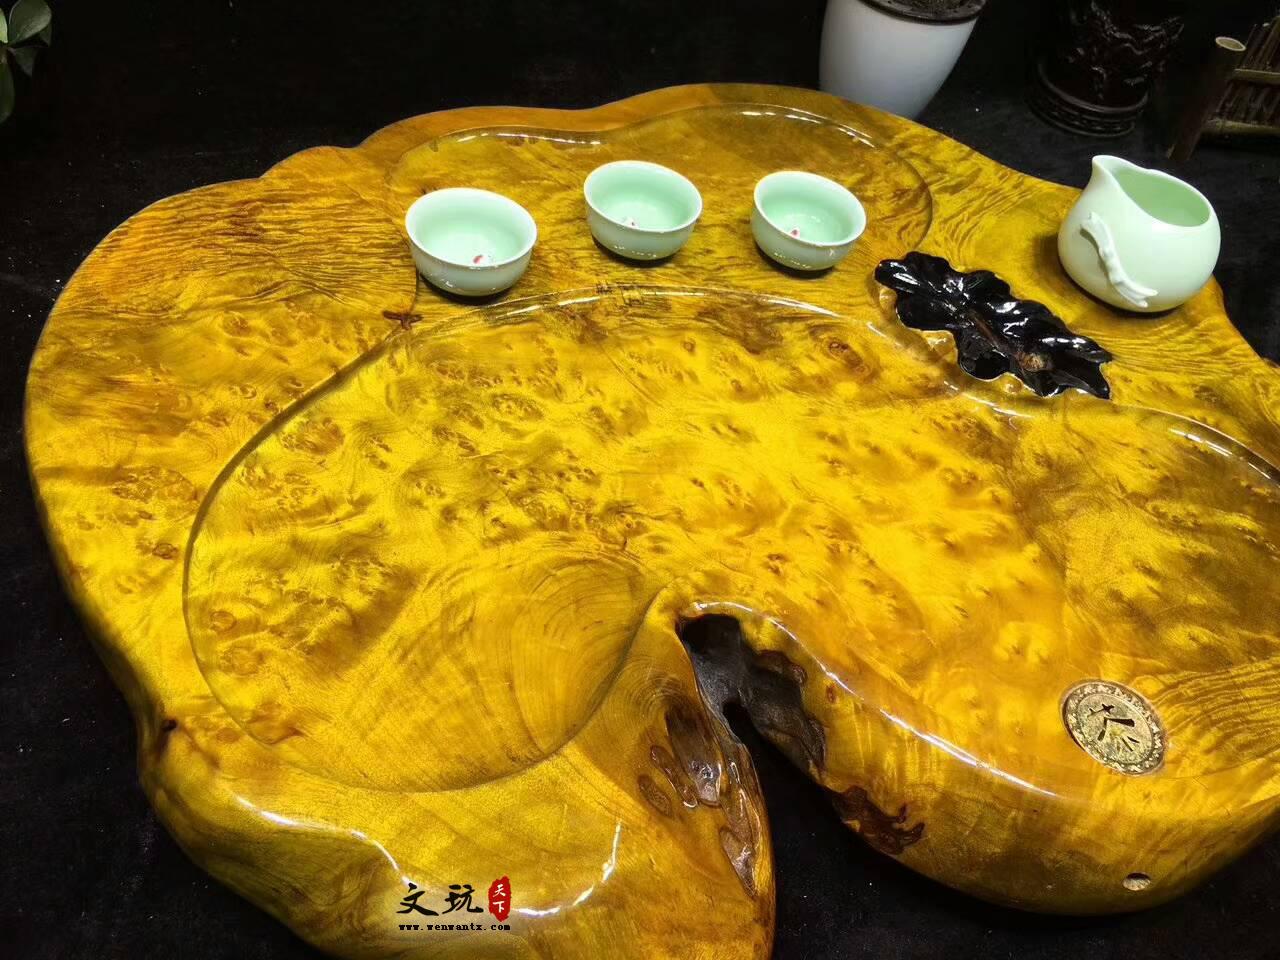 黄金樟茶桌带瘤疤 板面干净颜色金黄纹理清晰提升格调-1